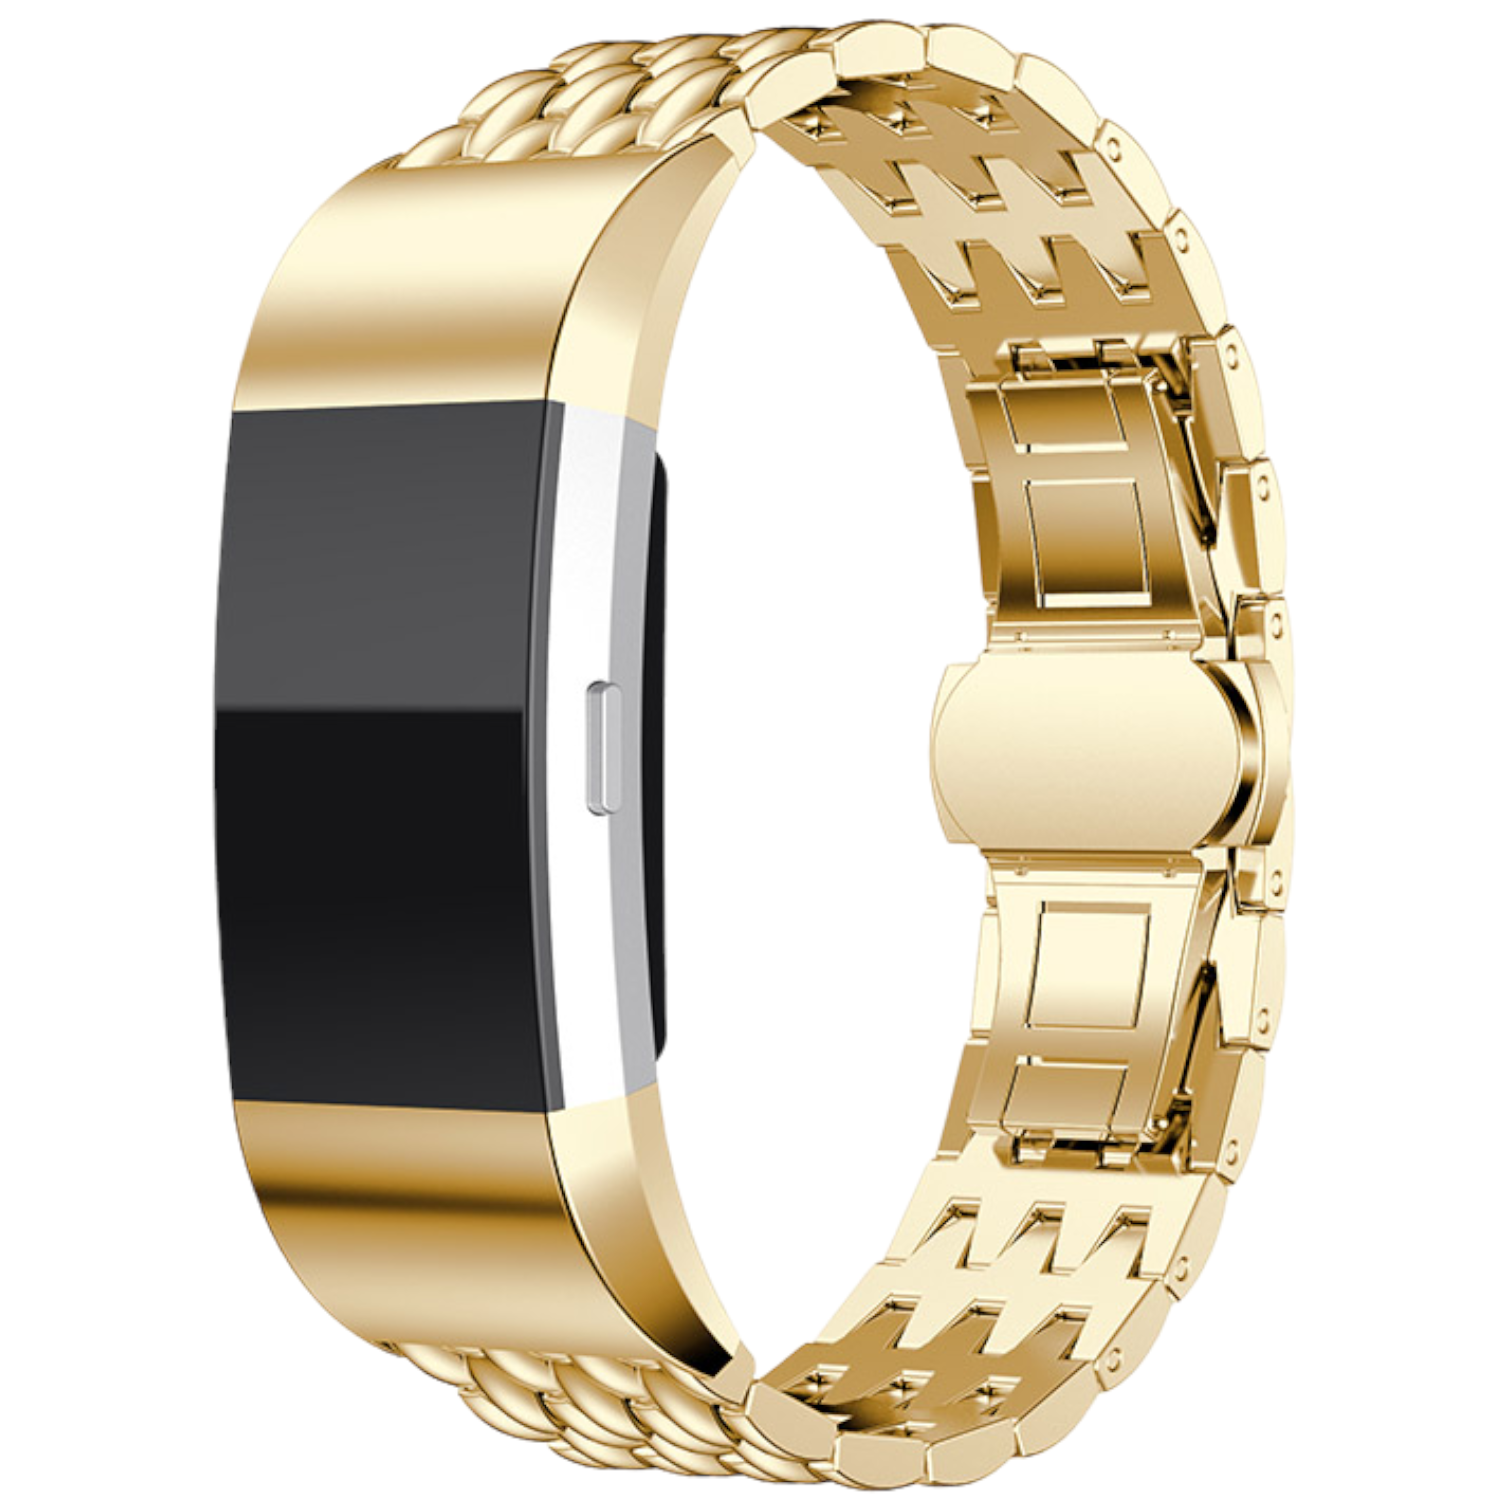 Fitbit Charge 2 sárkány Acél link szalag - arany